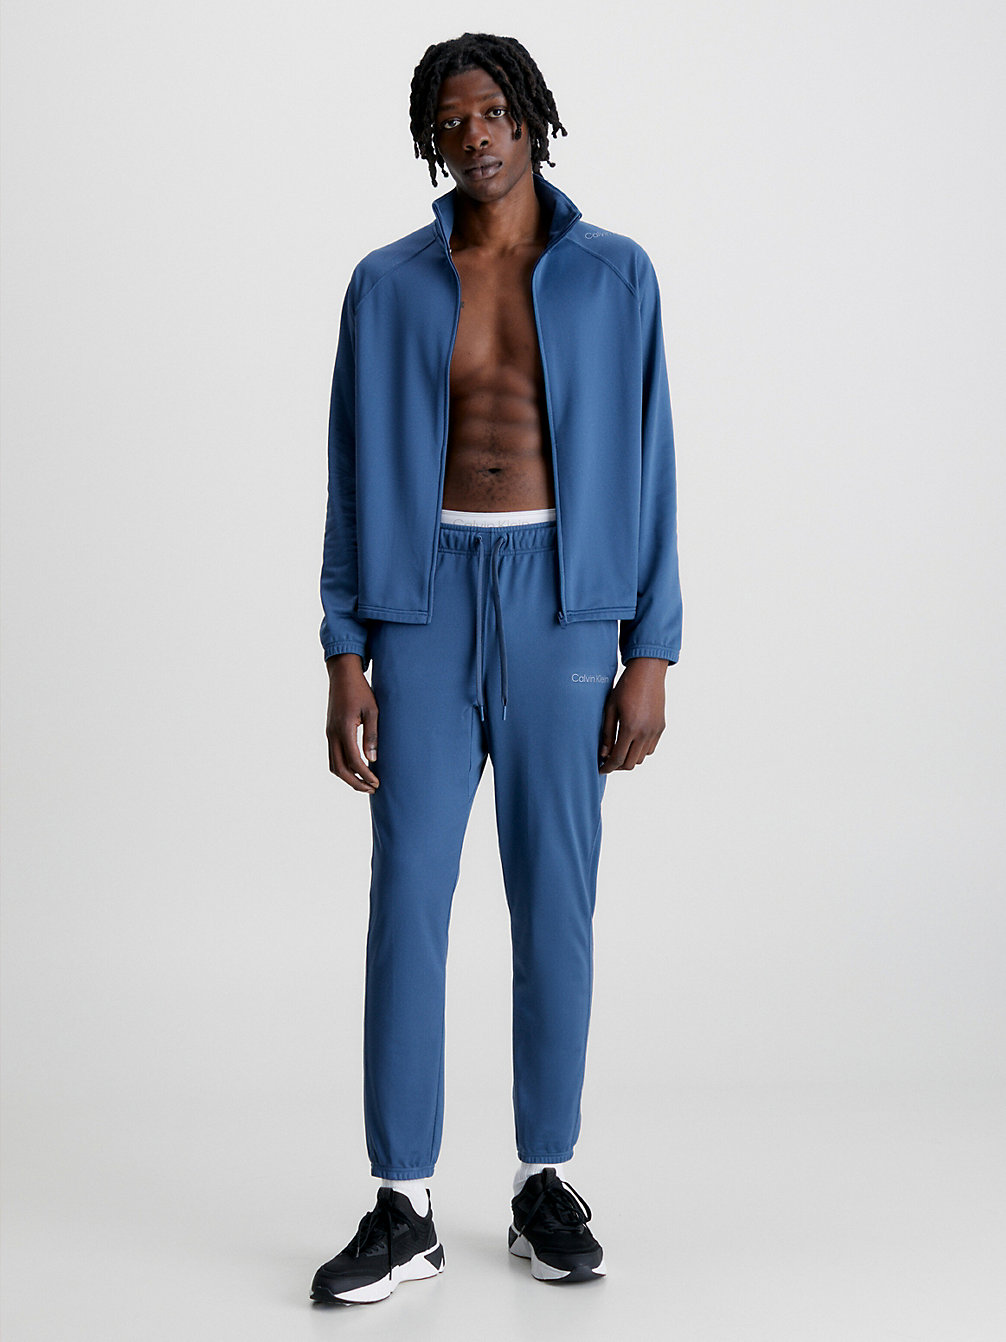 CRAYON BLUE > Wygodny Dres > undefined Mężczyźni - Calvin Klein